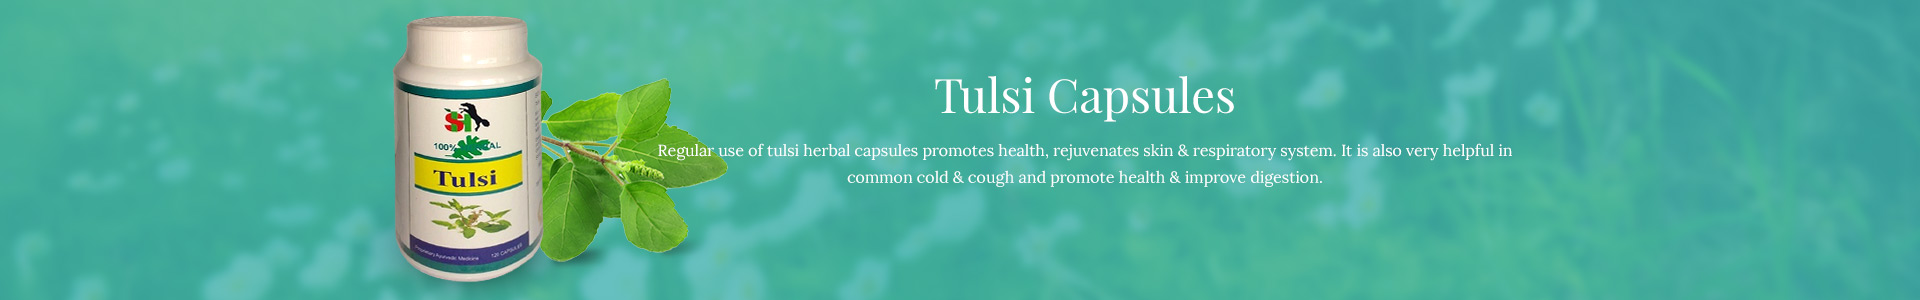 tulsi-capsules